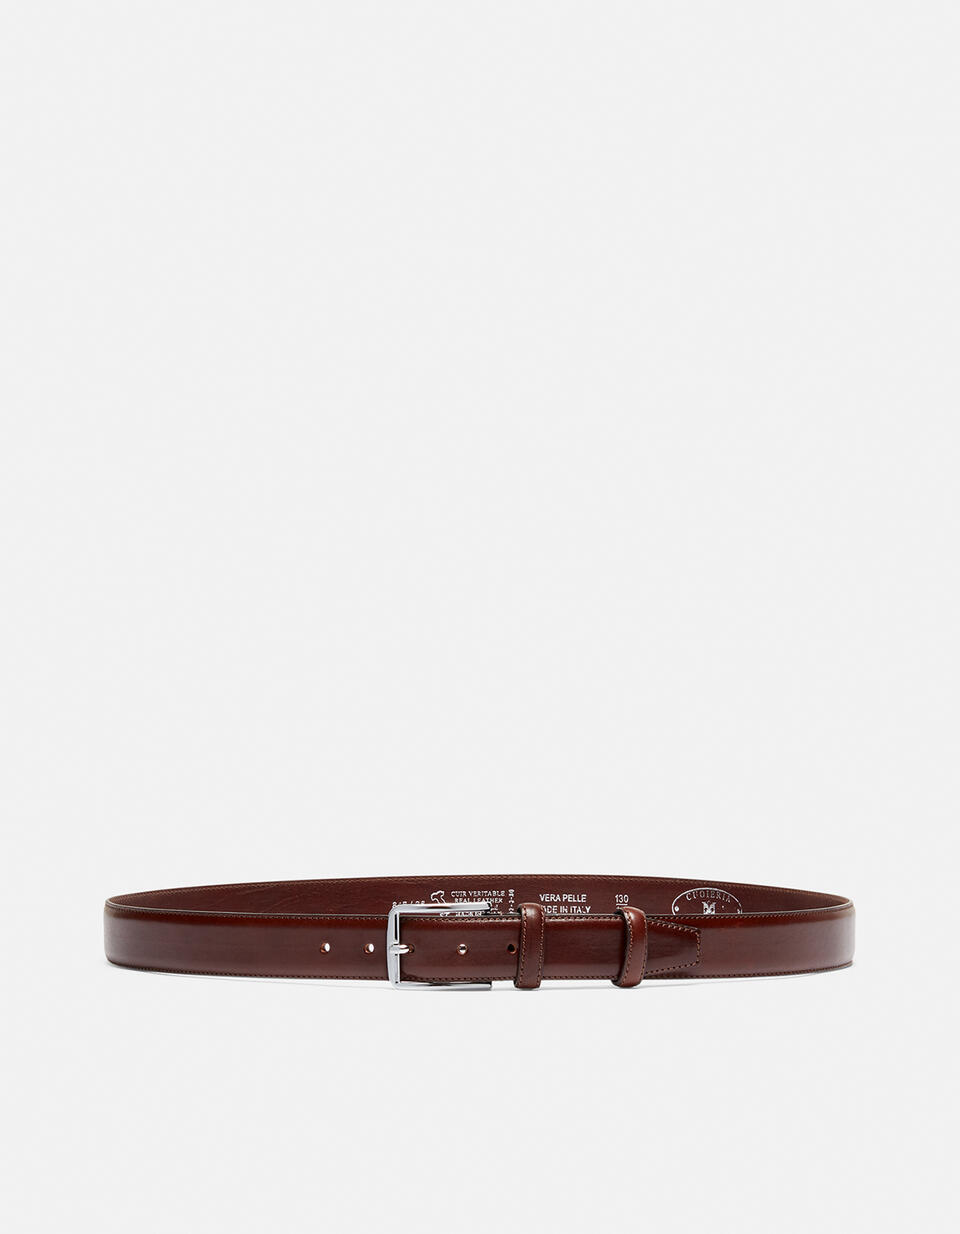 Cintura Elegante in Pelle con Punta quadra alta 3,5 cm - CINTURE UOMO | CINTURE  - CINTURE UOMO | CINTURECuoieria Fiorentina